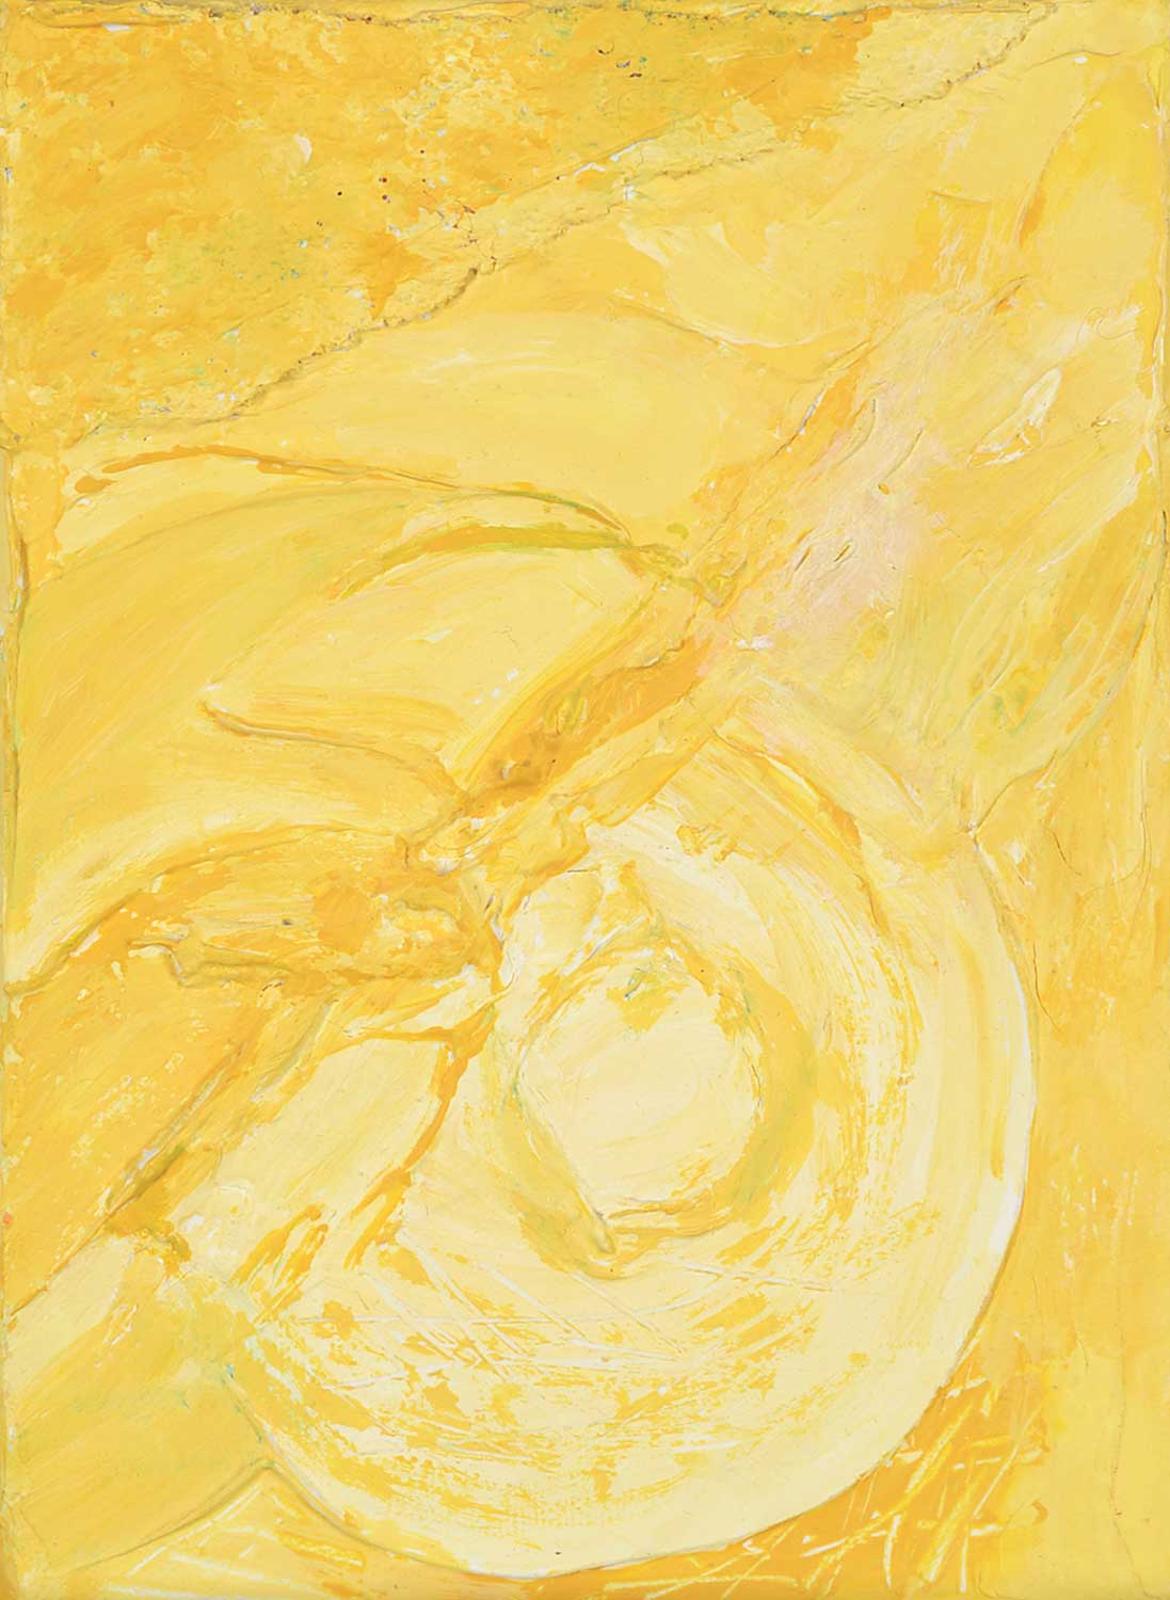 Elspeth Cameron - Untitled - Yellow Rhythm